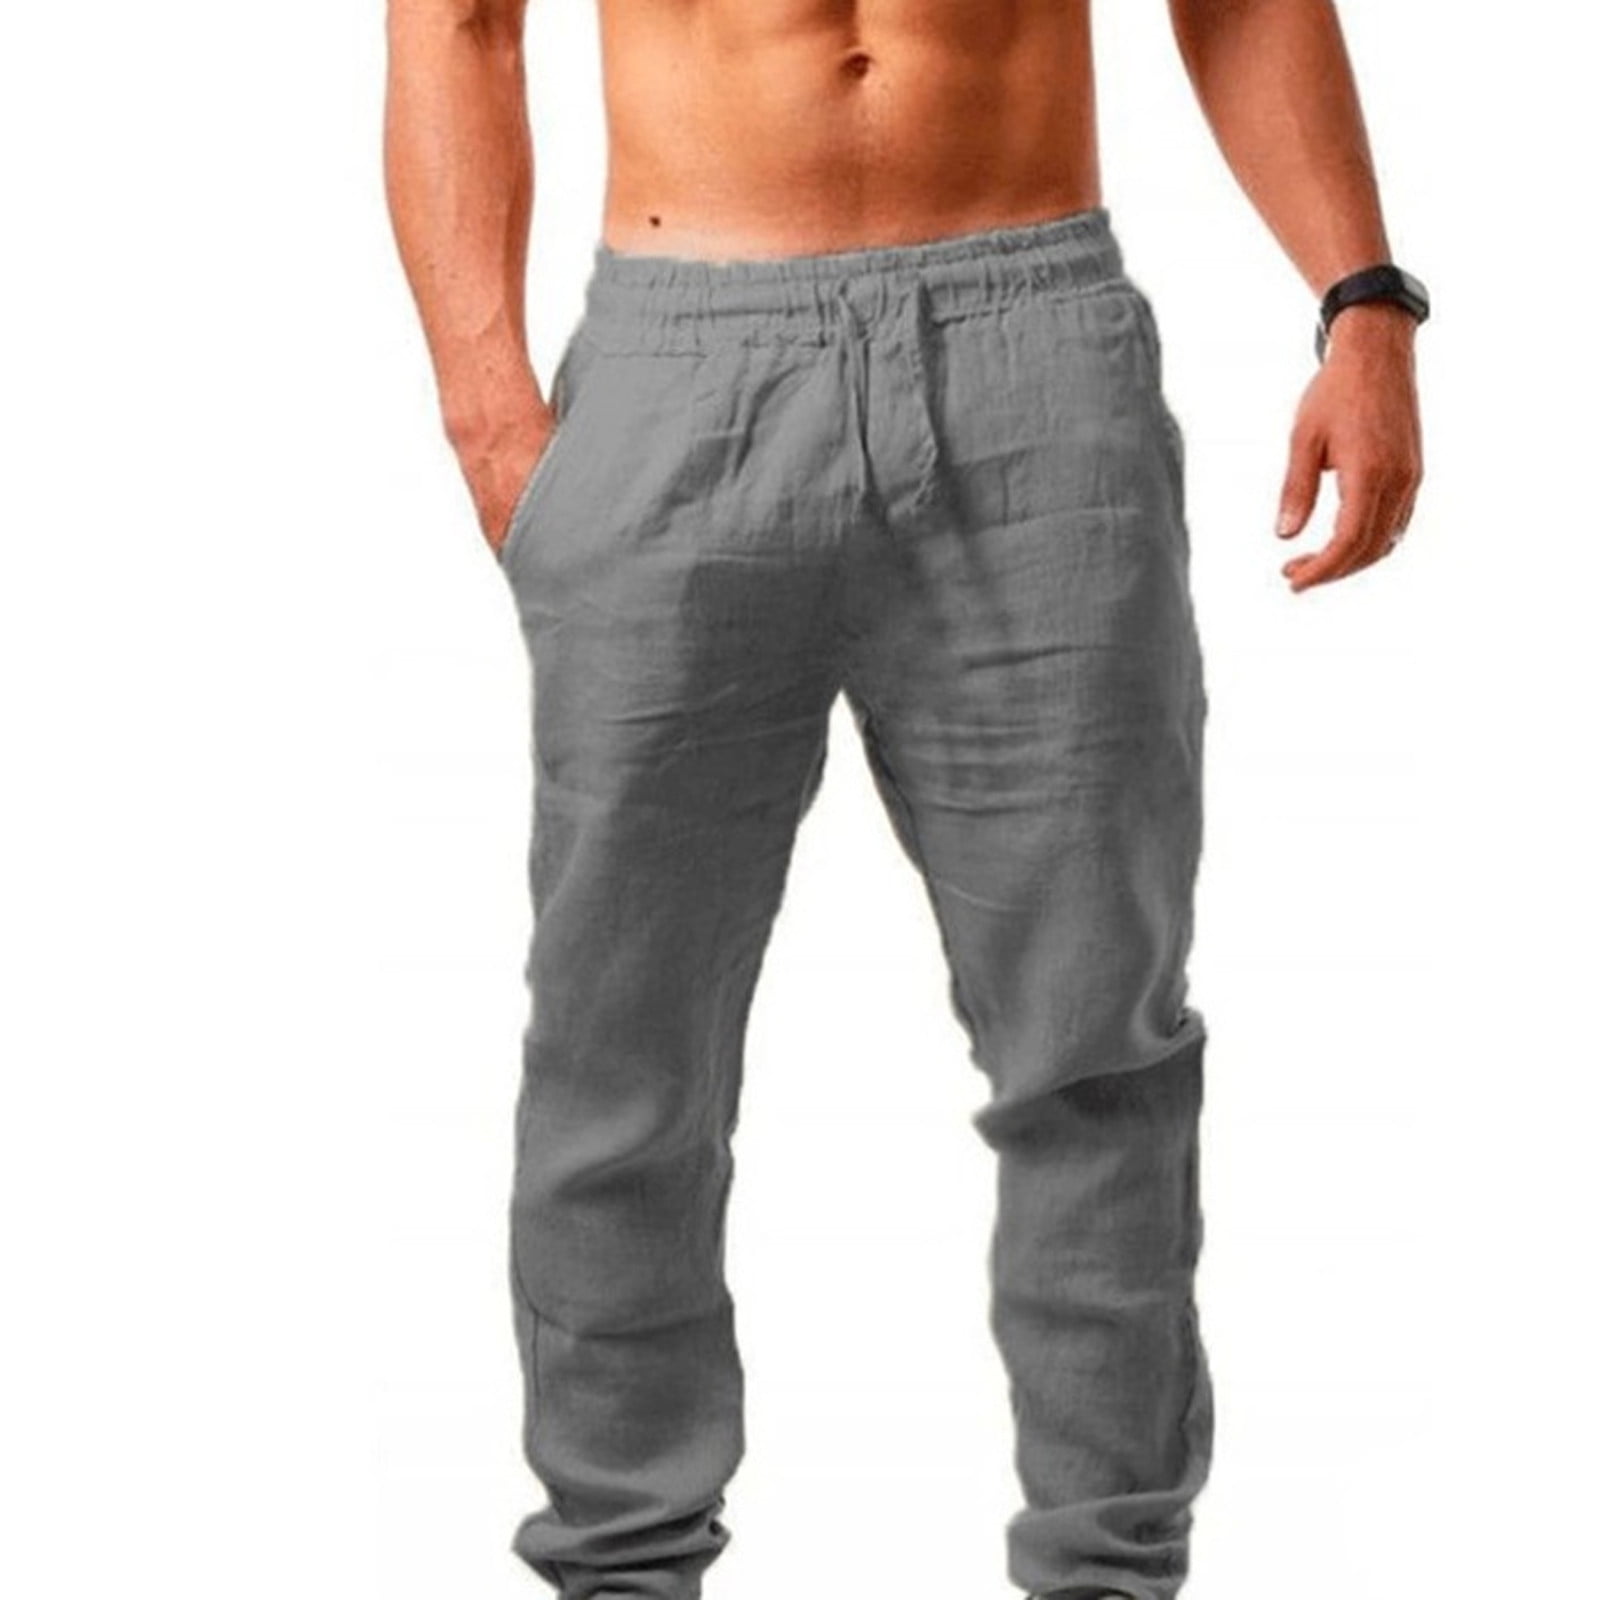 Long Pants For Men Men'S Elastic Pants Solid Color Breathable Cotton Linen  Loose Casual Pants Gray Xl,ac5989 